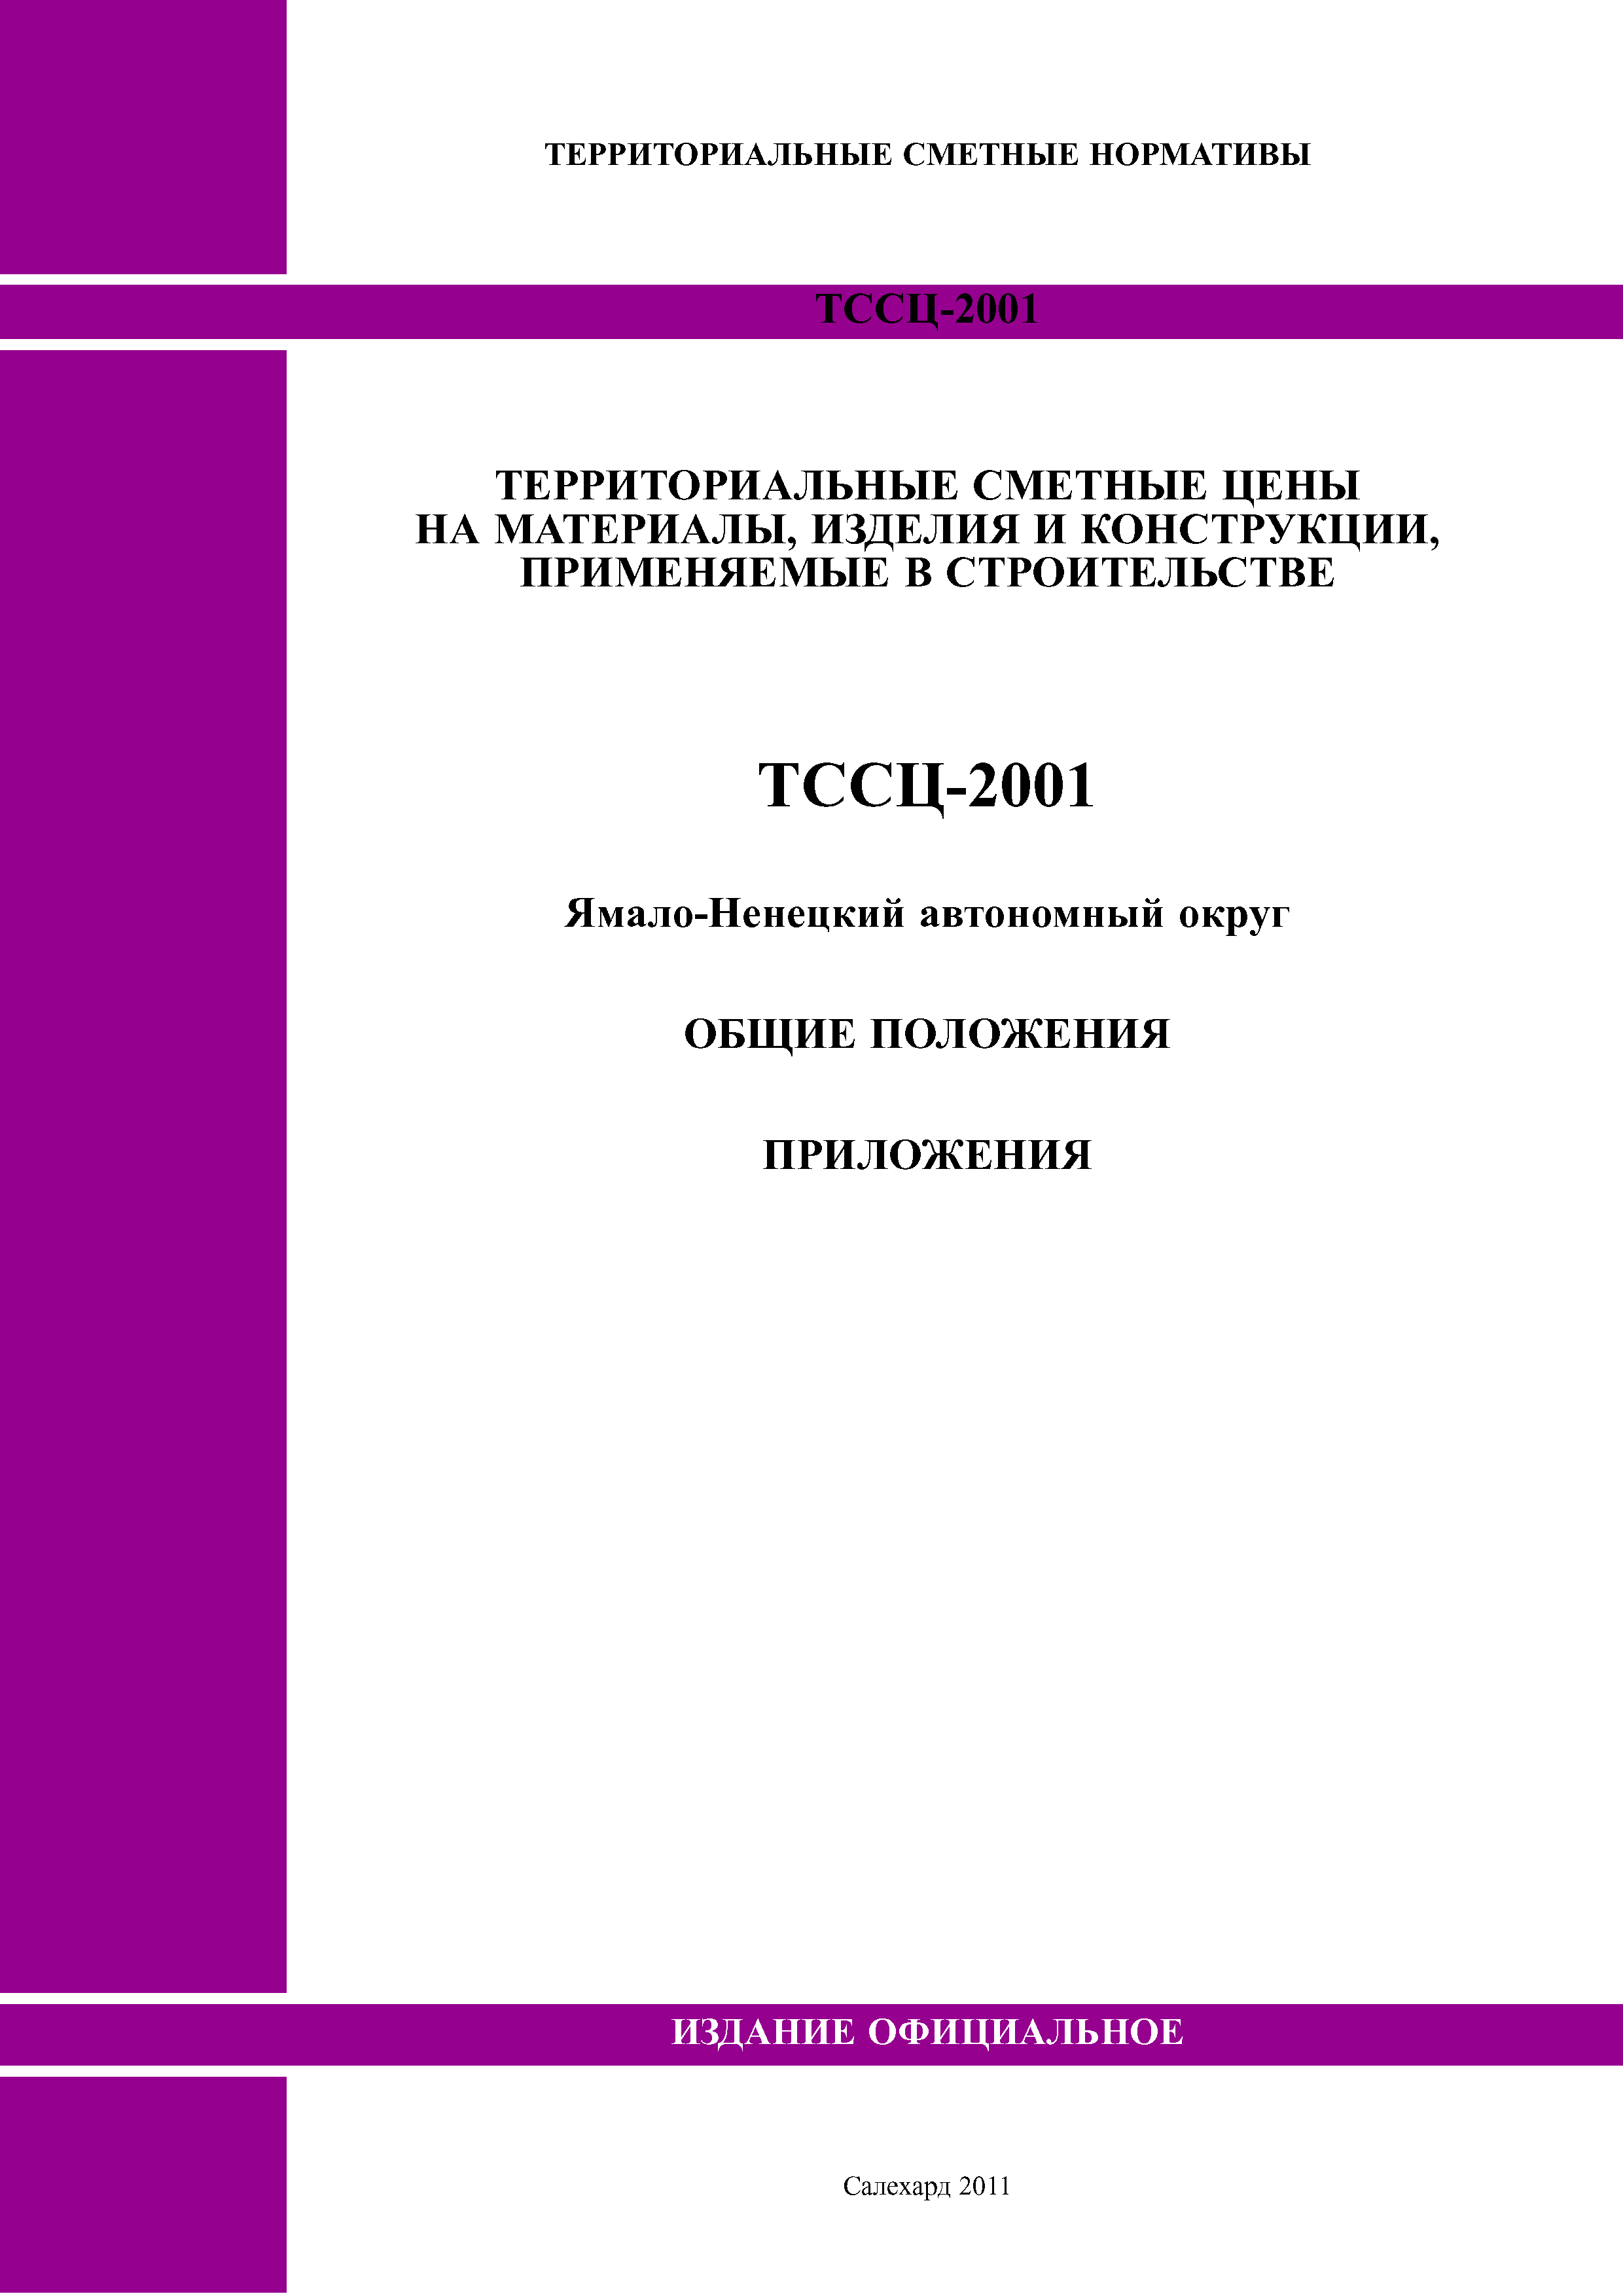 ТССЦ Ямало-Ненецкий автономный округ 2001